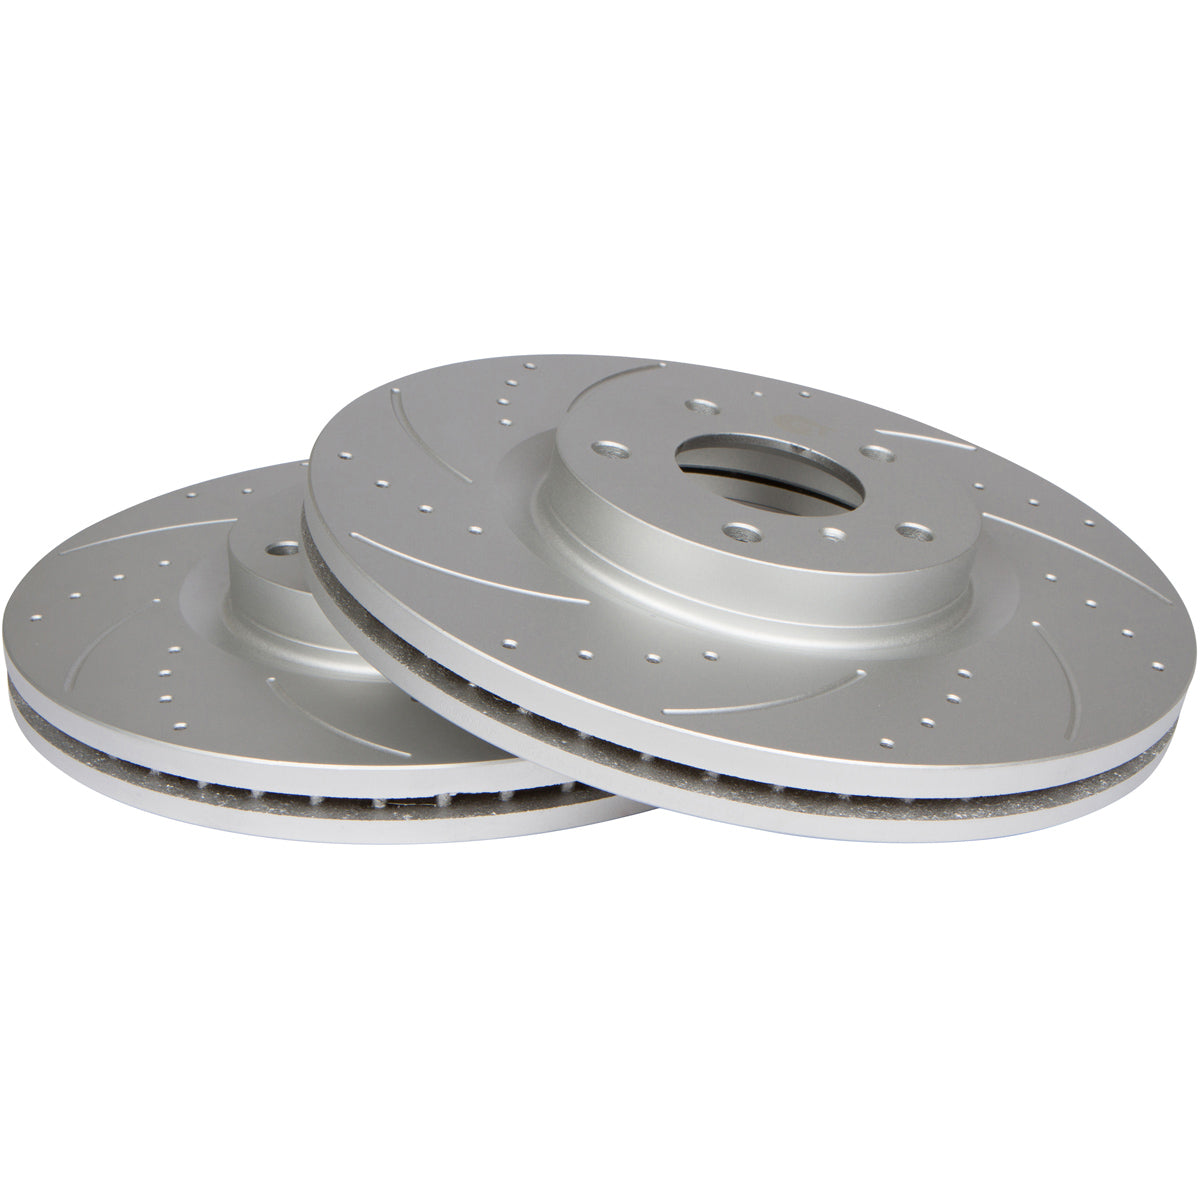 Scion xD 2008 - 2014 Disc Brake Rotors & Ceramic Brake Pads